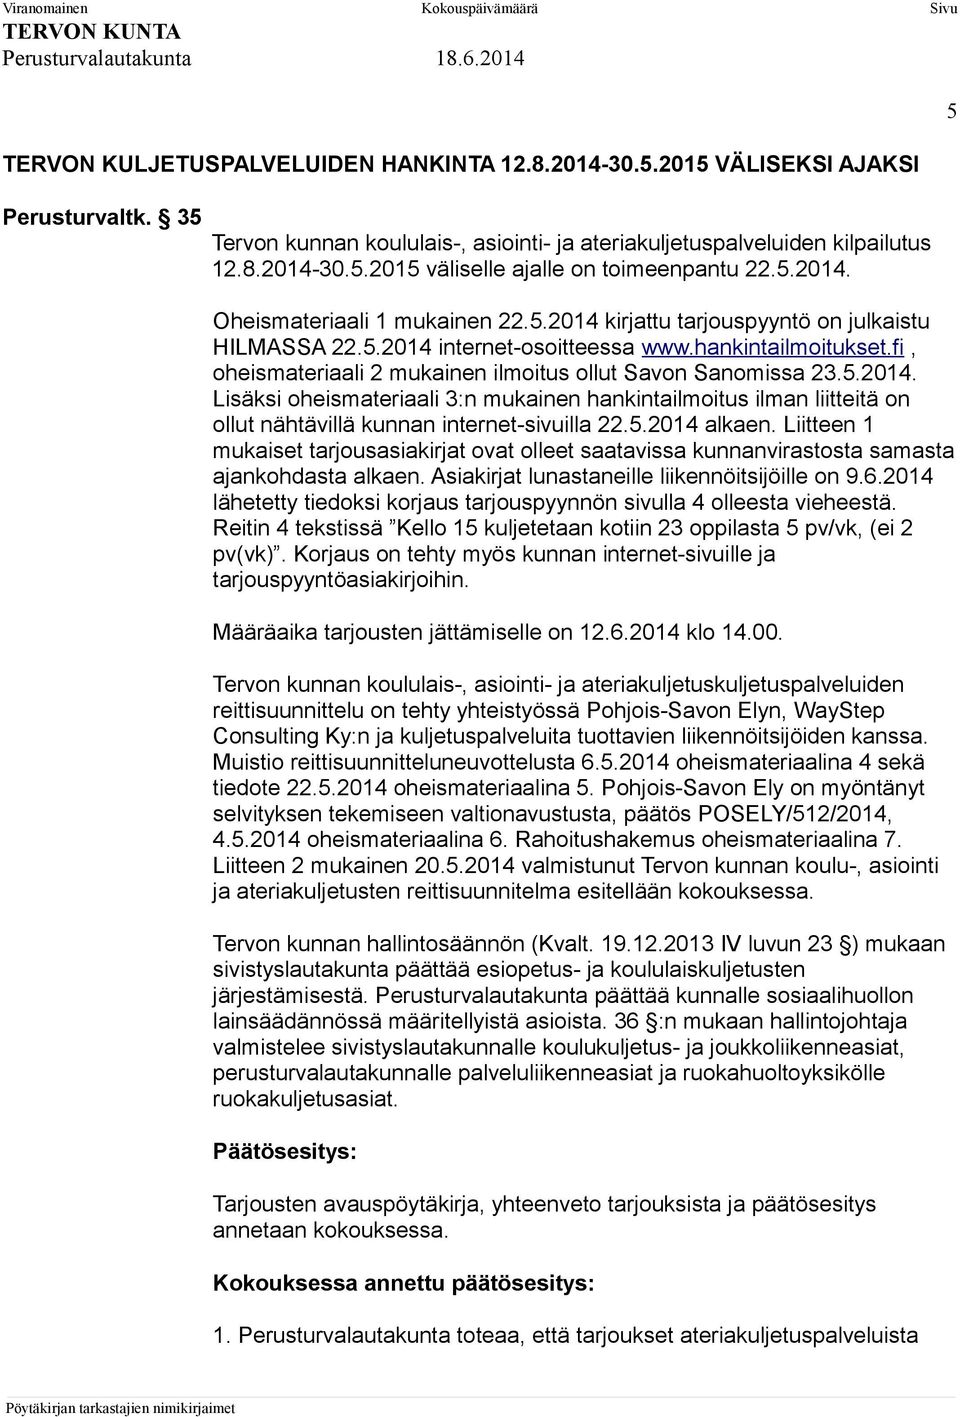 fi, oheismateriaali 2 mukainen ilmoitus ollut Savon Sanomissa 23.5.2014. Lisäksi oheismateriaali 3:n mukainen hankintailmoitus ilman liitteitä on ollut nähtävillä kunnan internet-sivuilla 22.5.2014 alkaen.